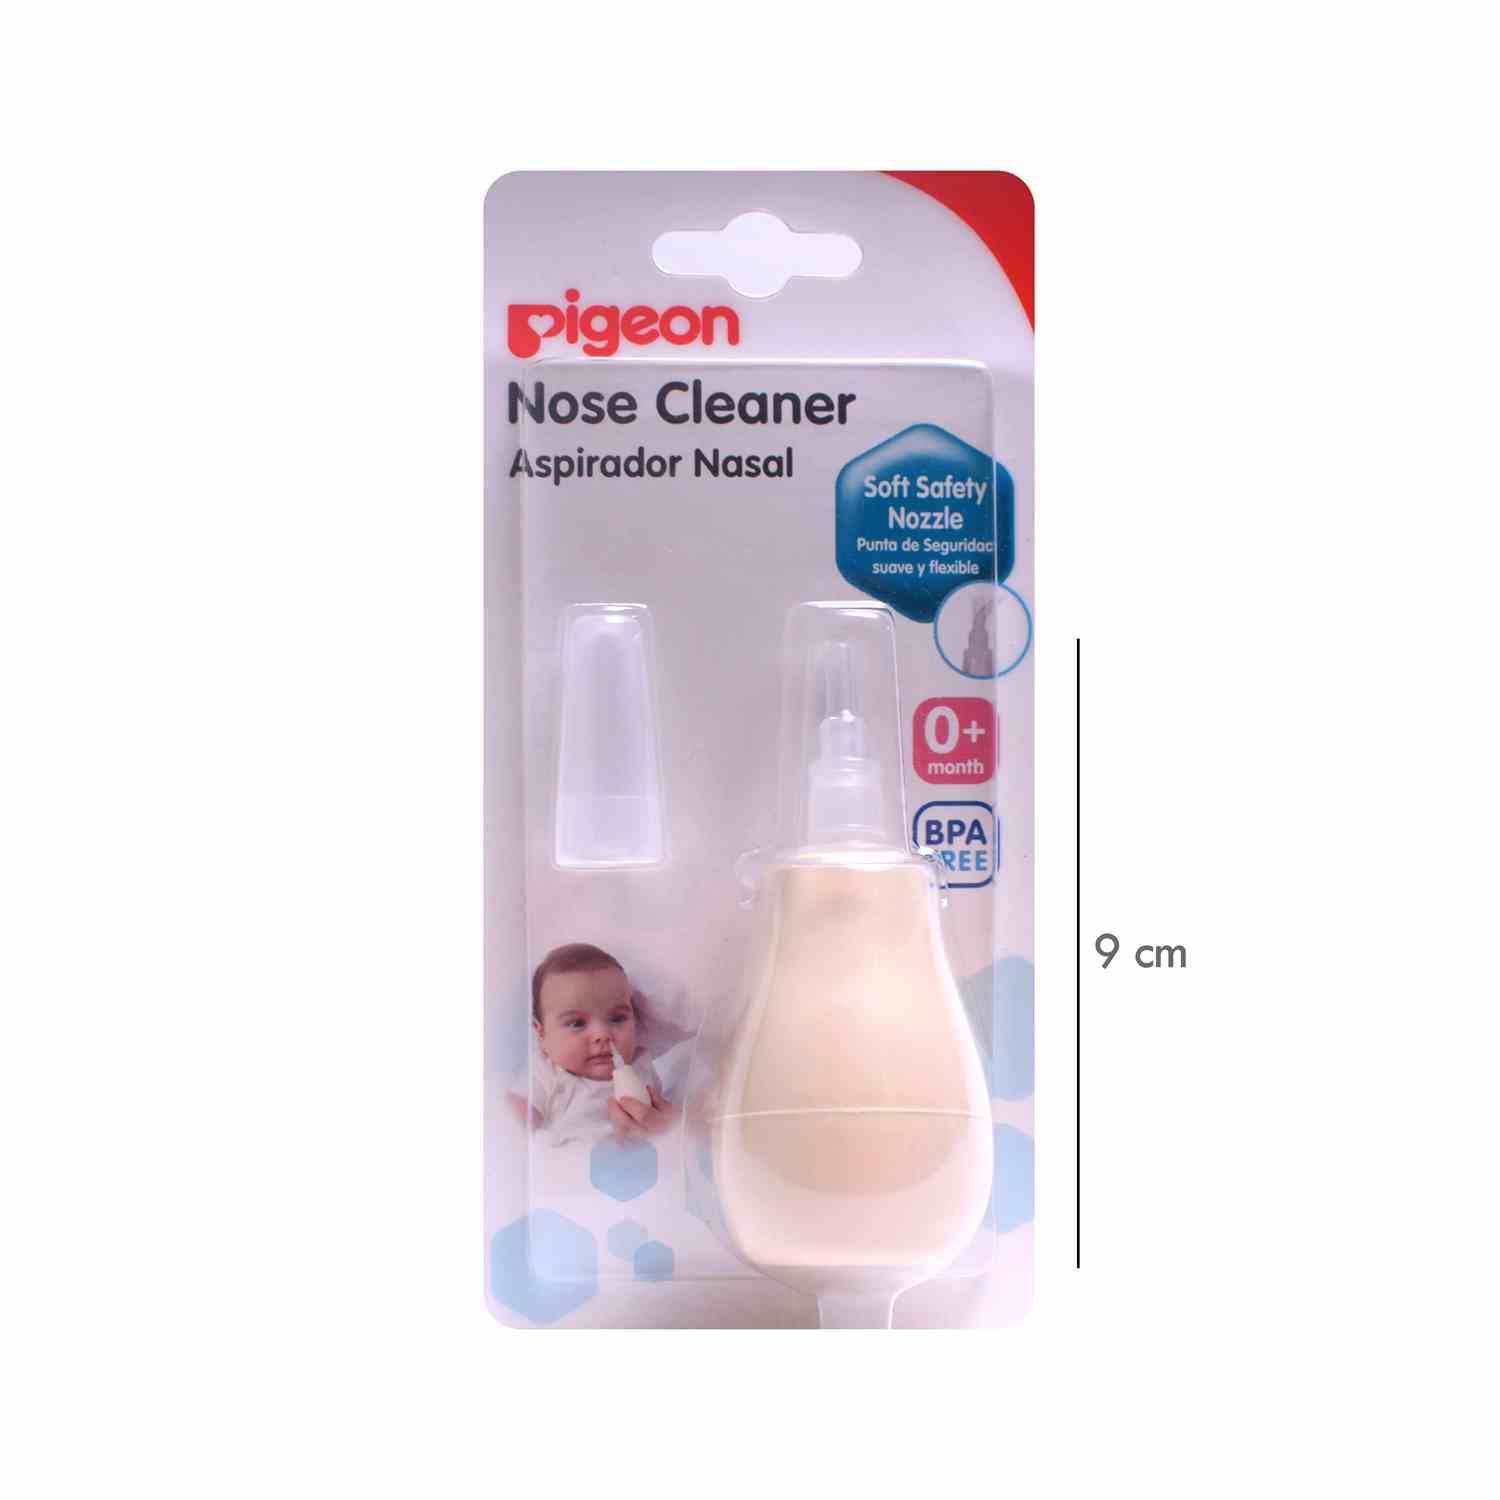 PIGEON Nose Cleaner 0+m Age, Cream